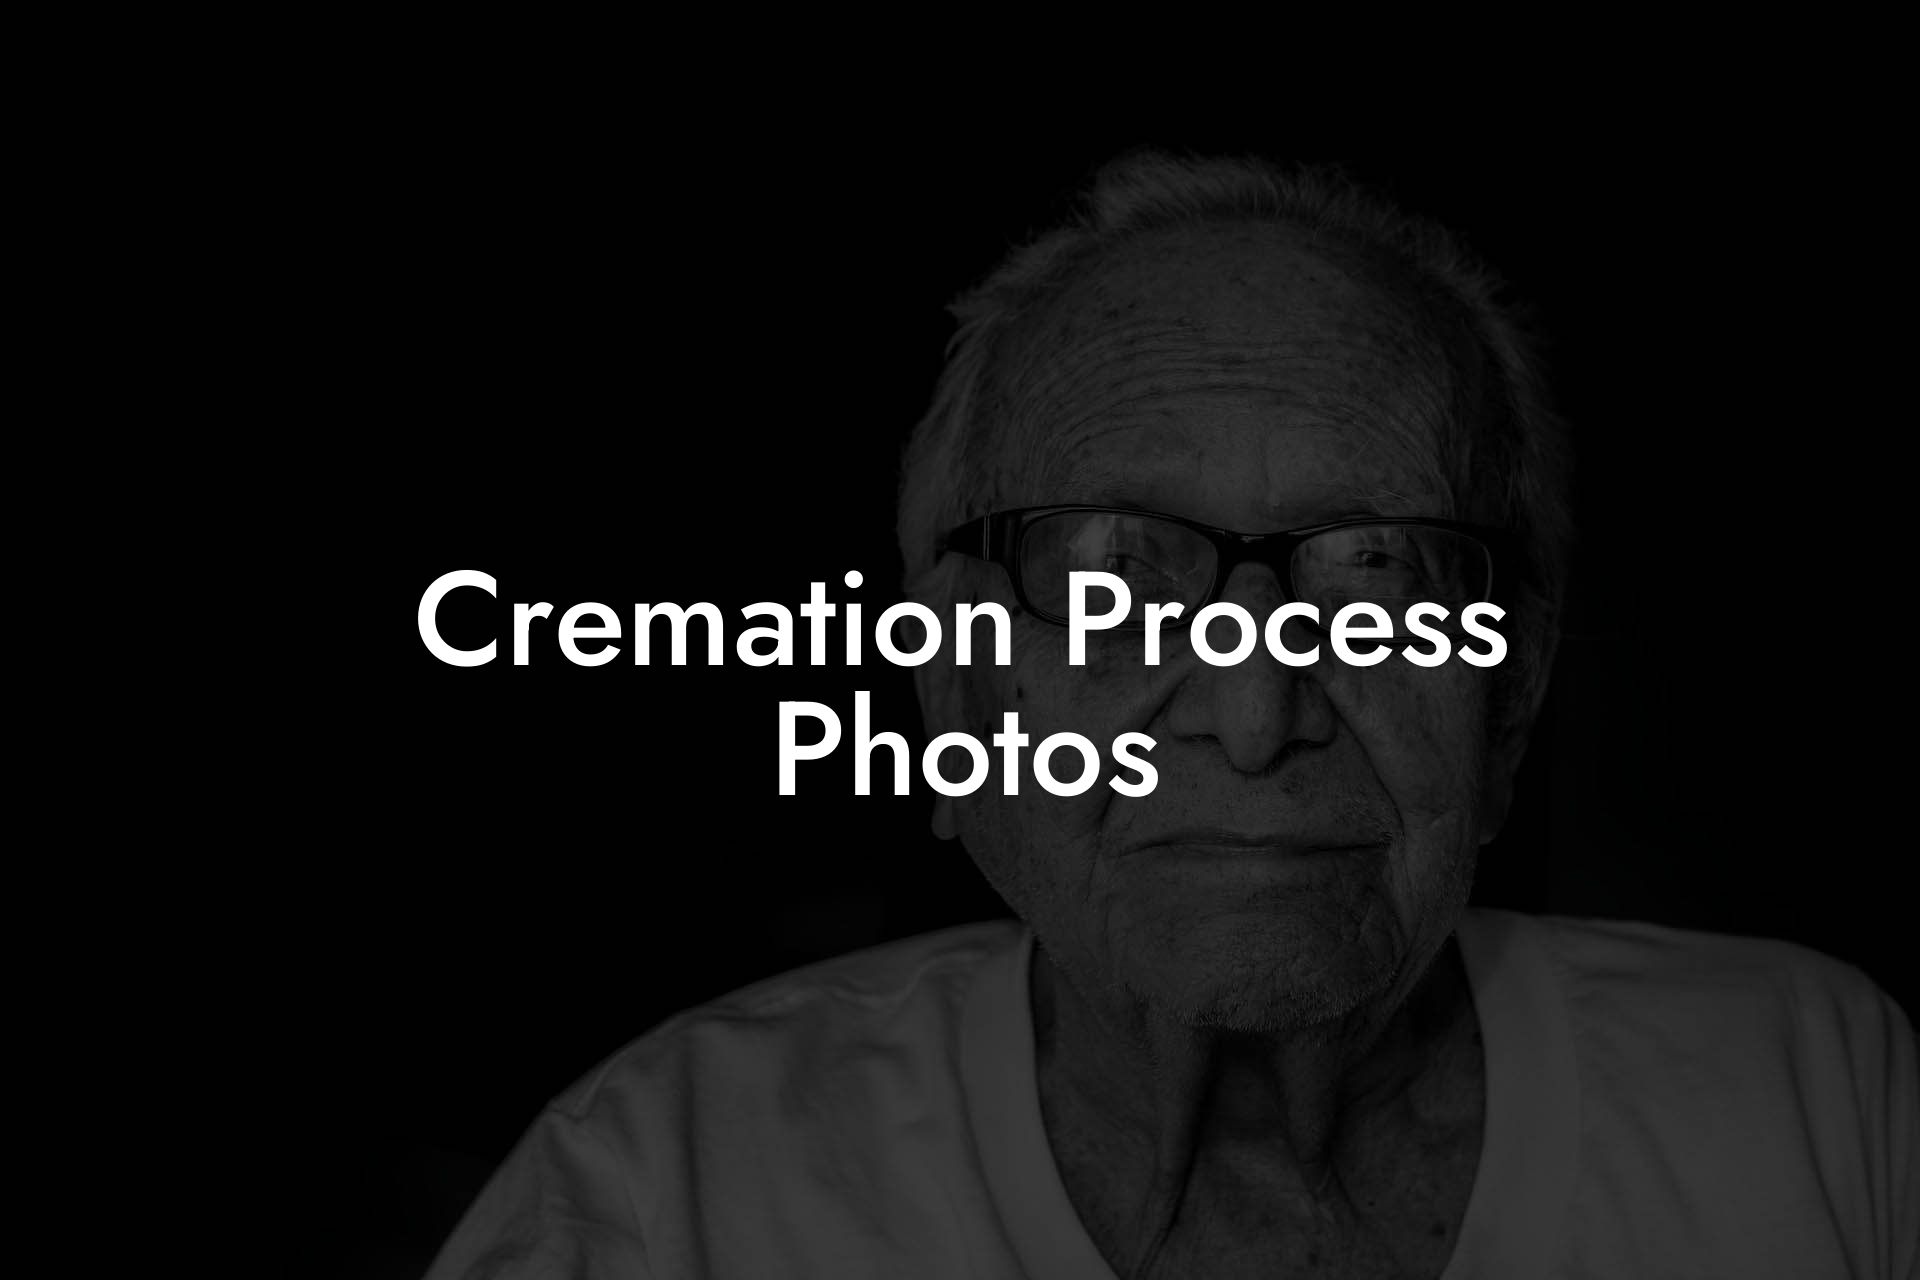 Cremation Process Photos